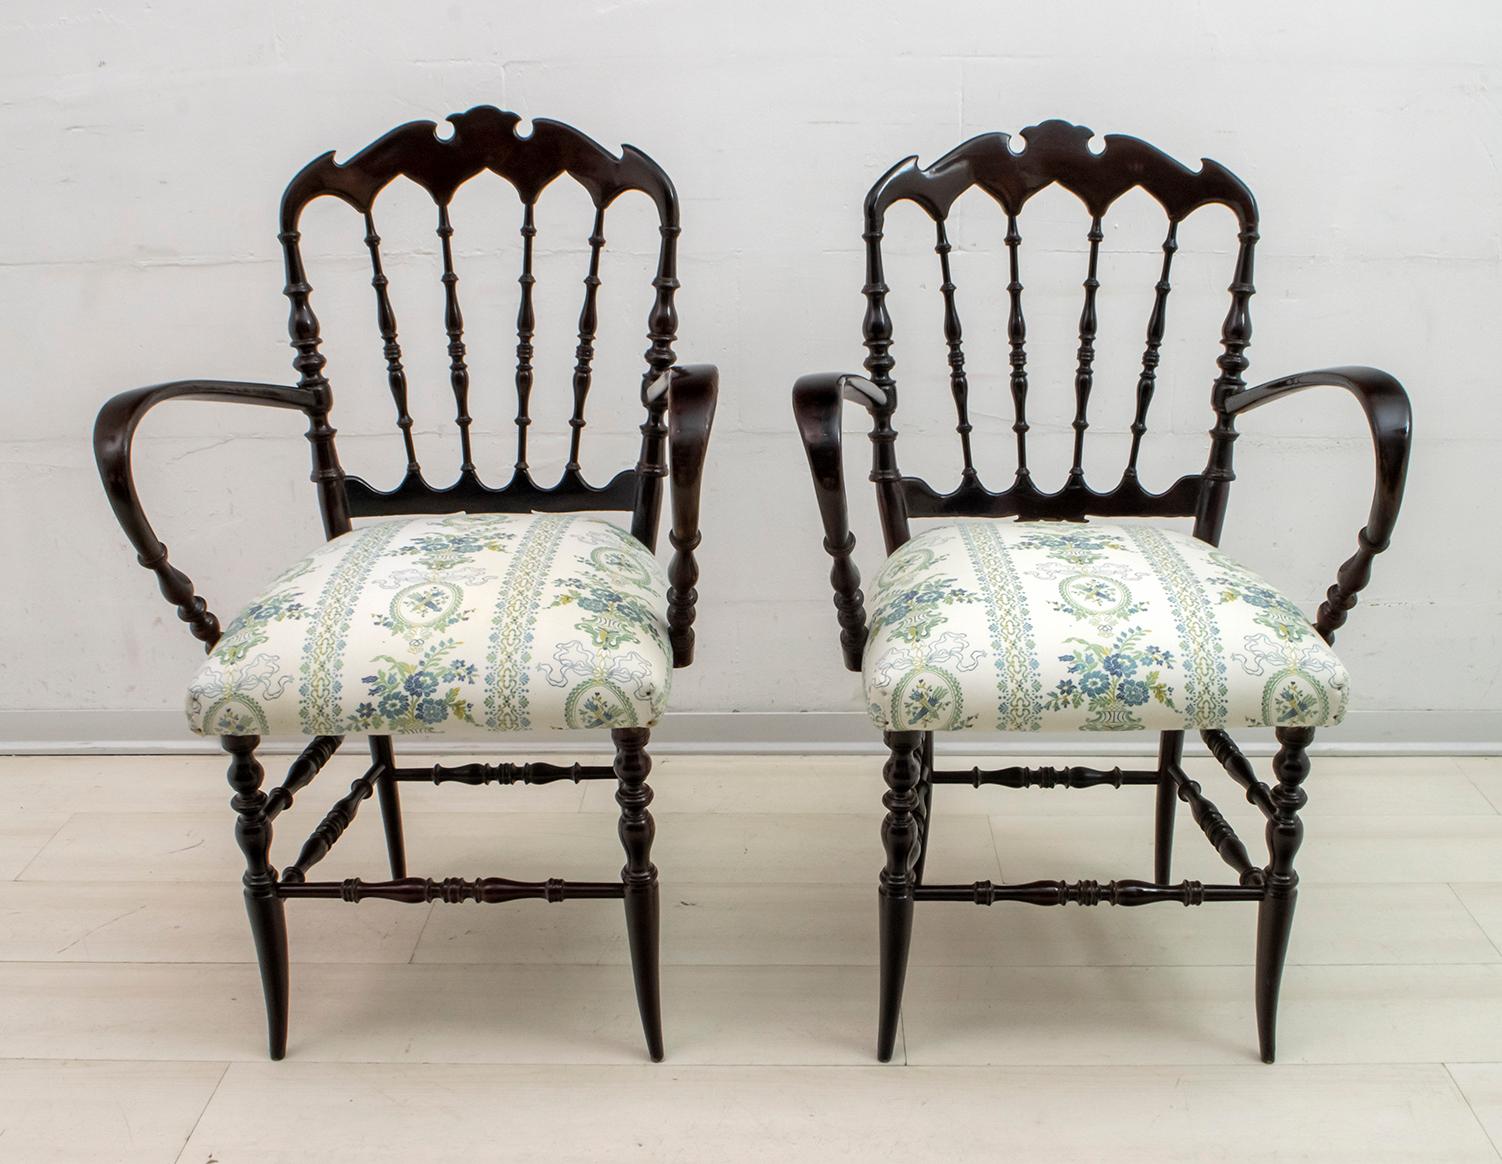 Dieses Paar typischer Chiavari-Stühle mit Armlehnen wurde von Gaetano Descalzi in der italienischen Stadt Chiavari entworfen und wird dort seither in verschiedenen Modellen hergestellt.
Hergestellt aus mahagonifarbener Buche und mit Satinstoff